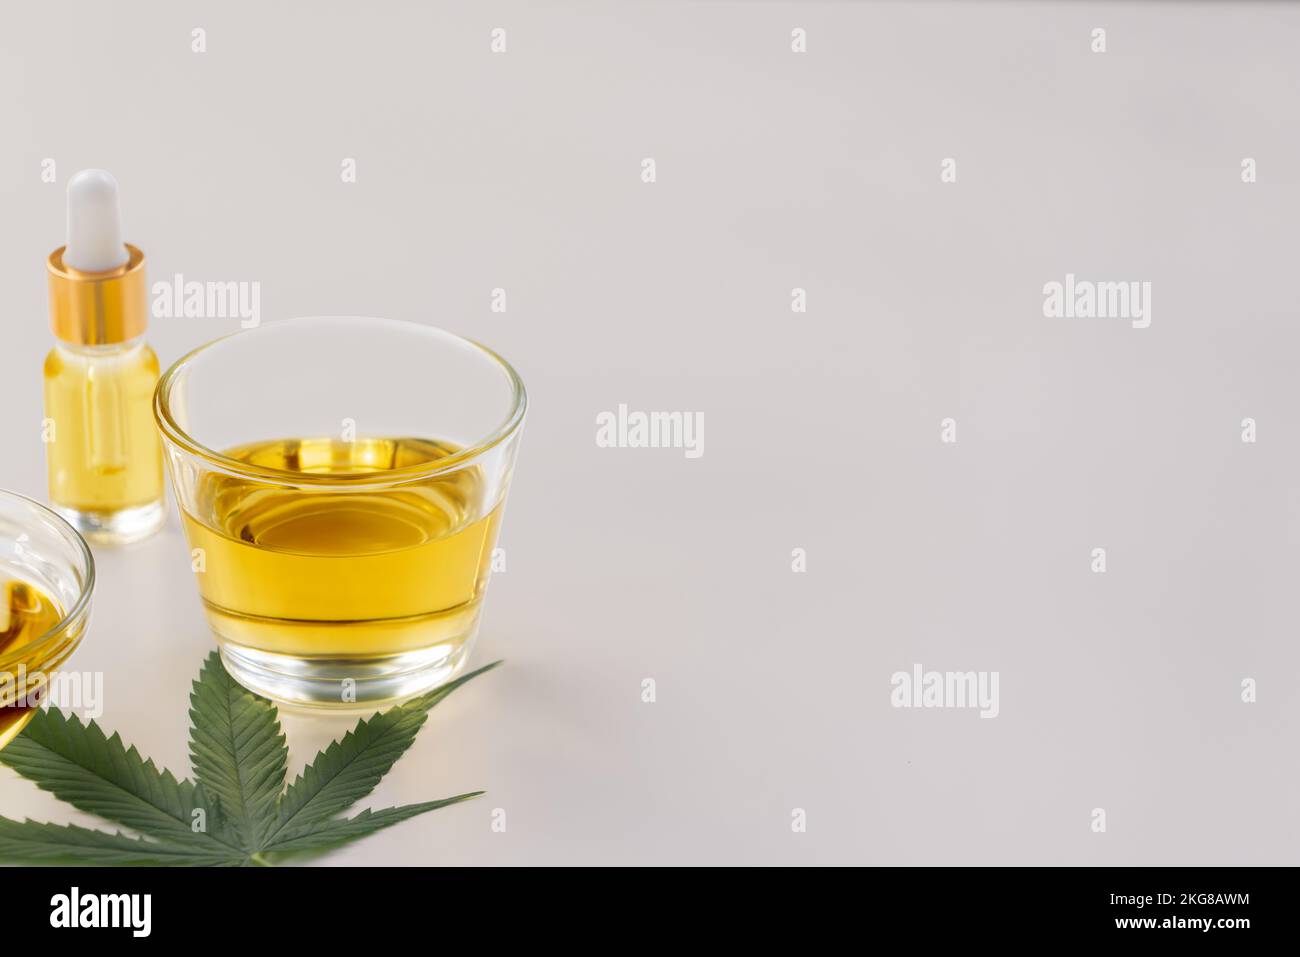 Un bol en verre d'huile de CBD, un bourgeon de cannabis et une feuille de chanvre sont présentés sur fond blanc. Conception de l'extrait d'huile légalisé du cannabis. Banque D'Images